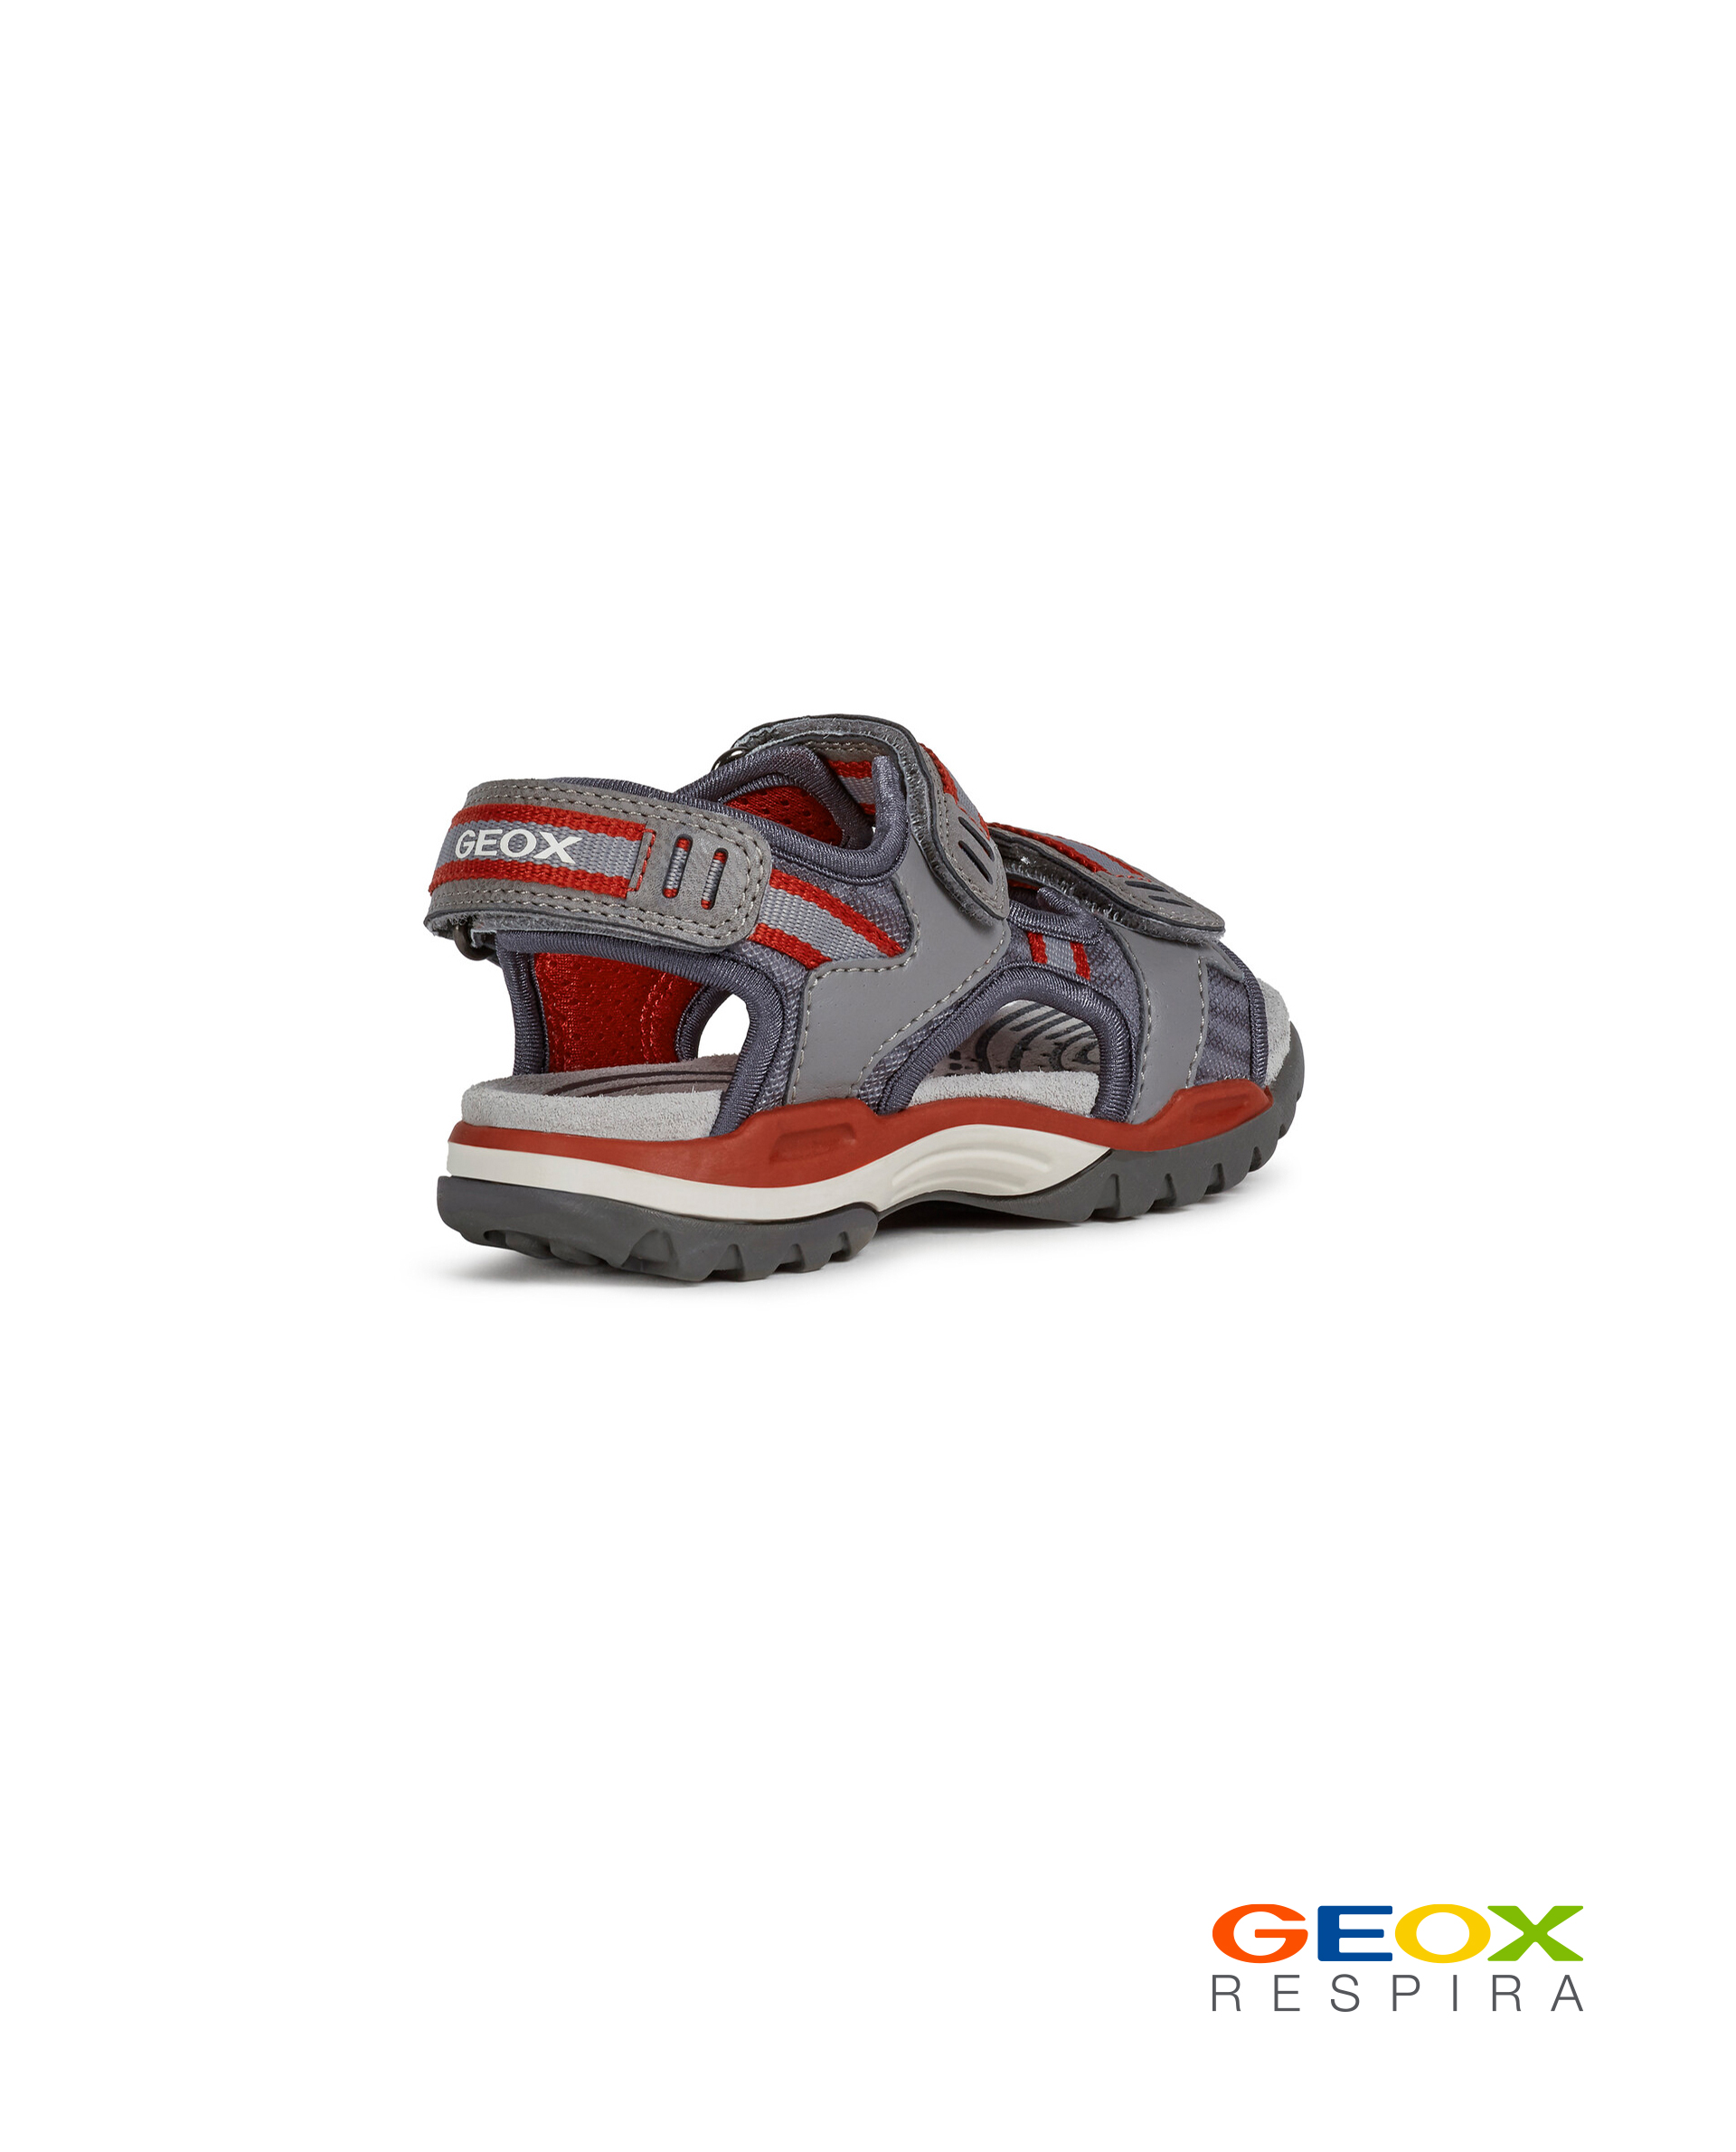 Серые сандалии Geox для мальчика J020RD014MEC0051, размер 32, цвет серый - фото 3